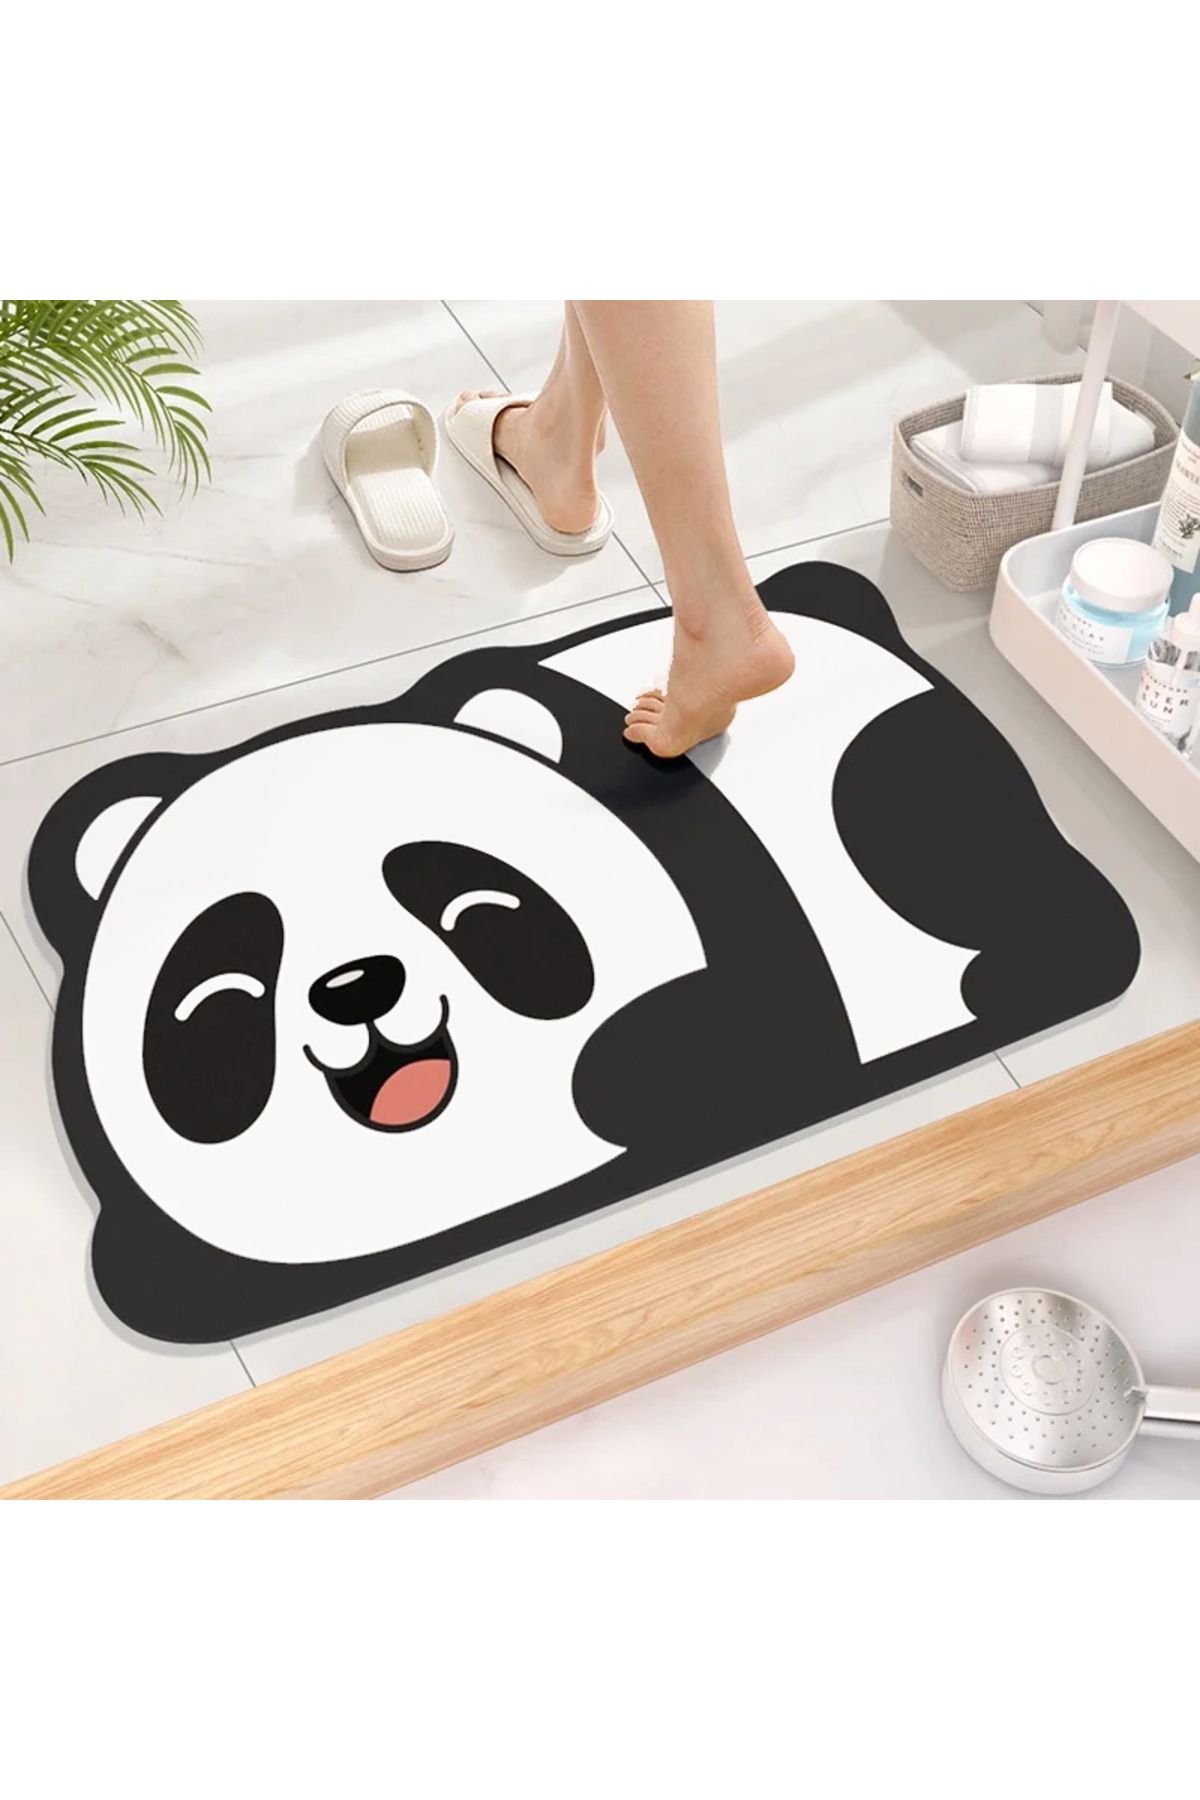 Else Dekor Sevimli Panda Su Emici Duş Önü Banyo Paspası Klozet Tek Parça Hayvanlı Banyo Halısı